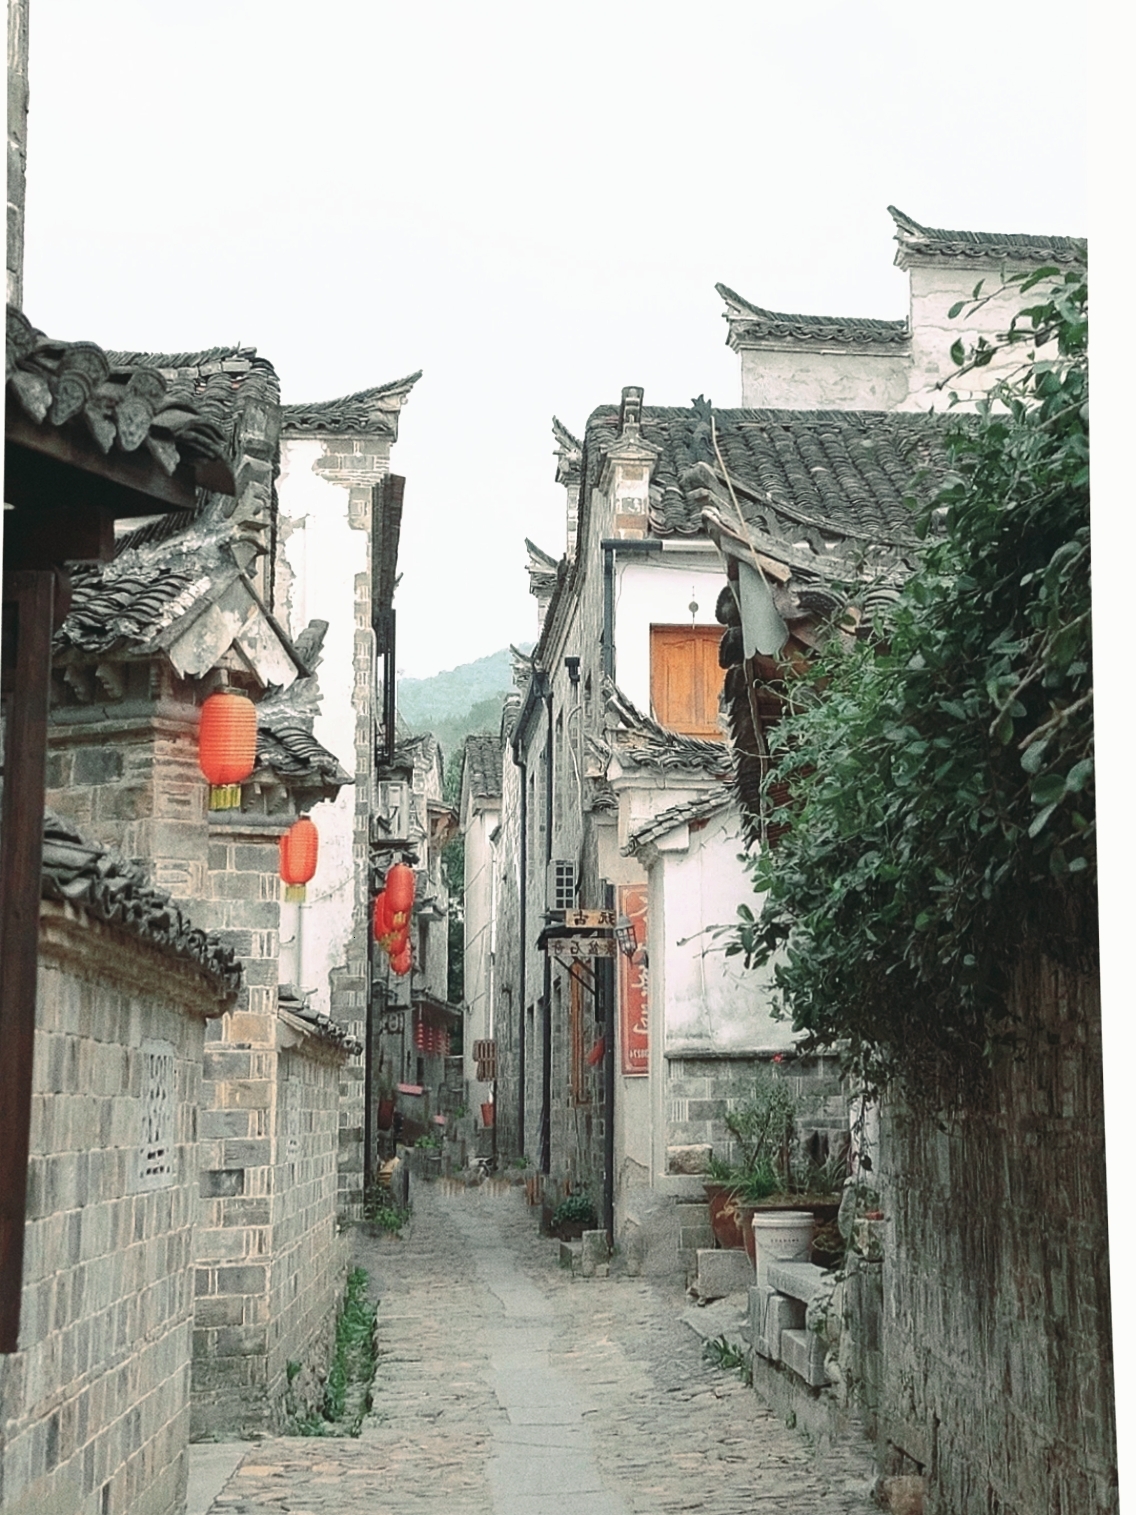 查济古镇——一个充满历史风情的地方